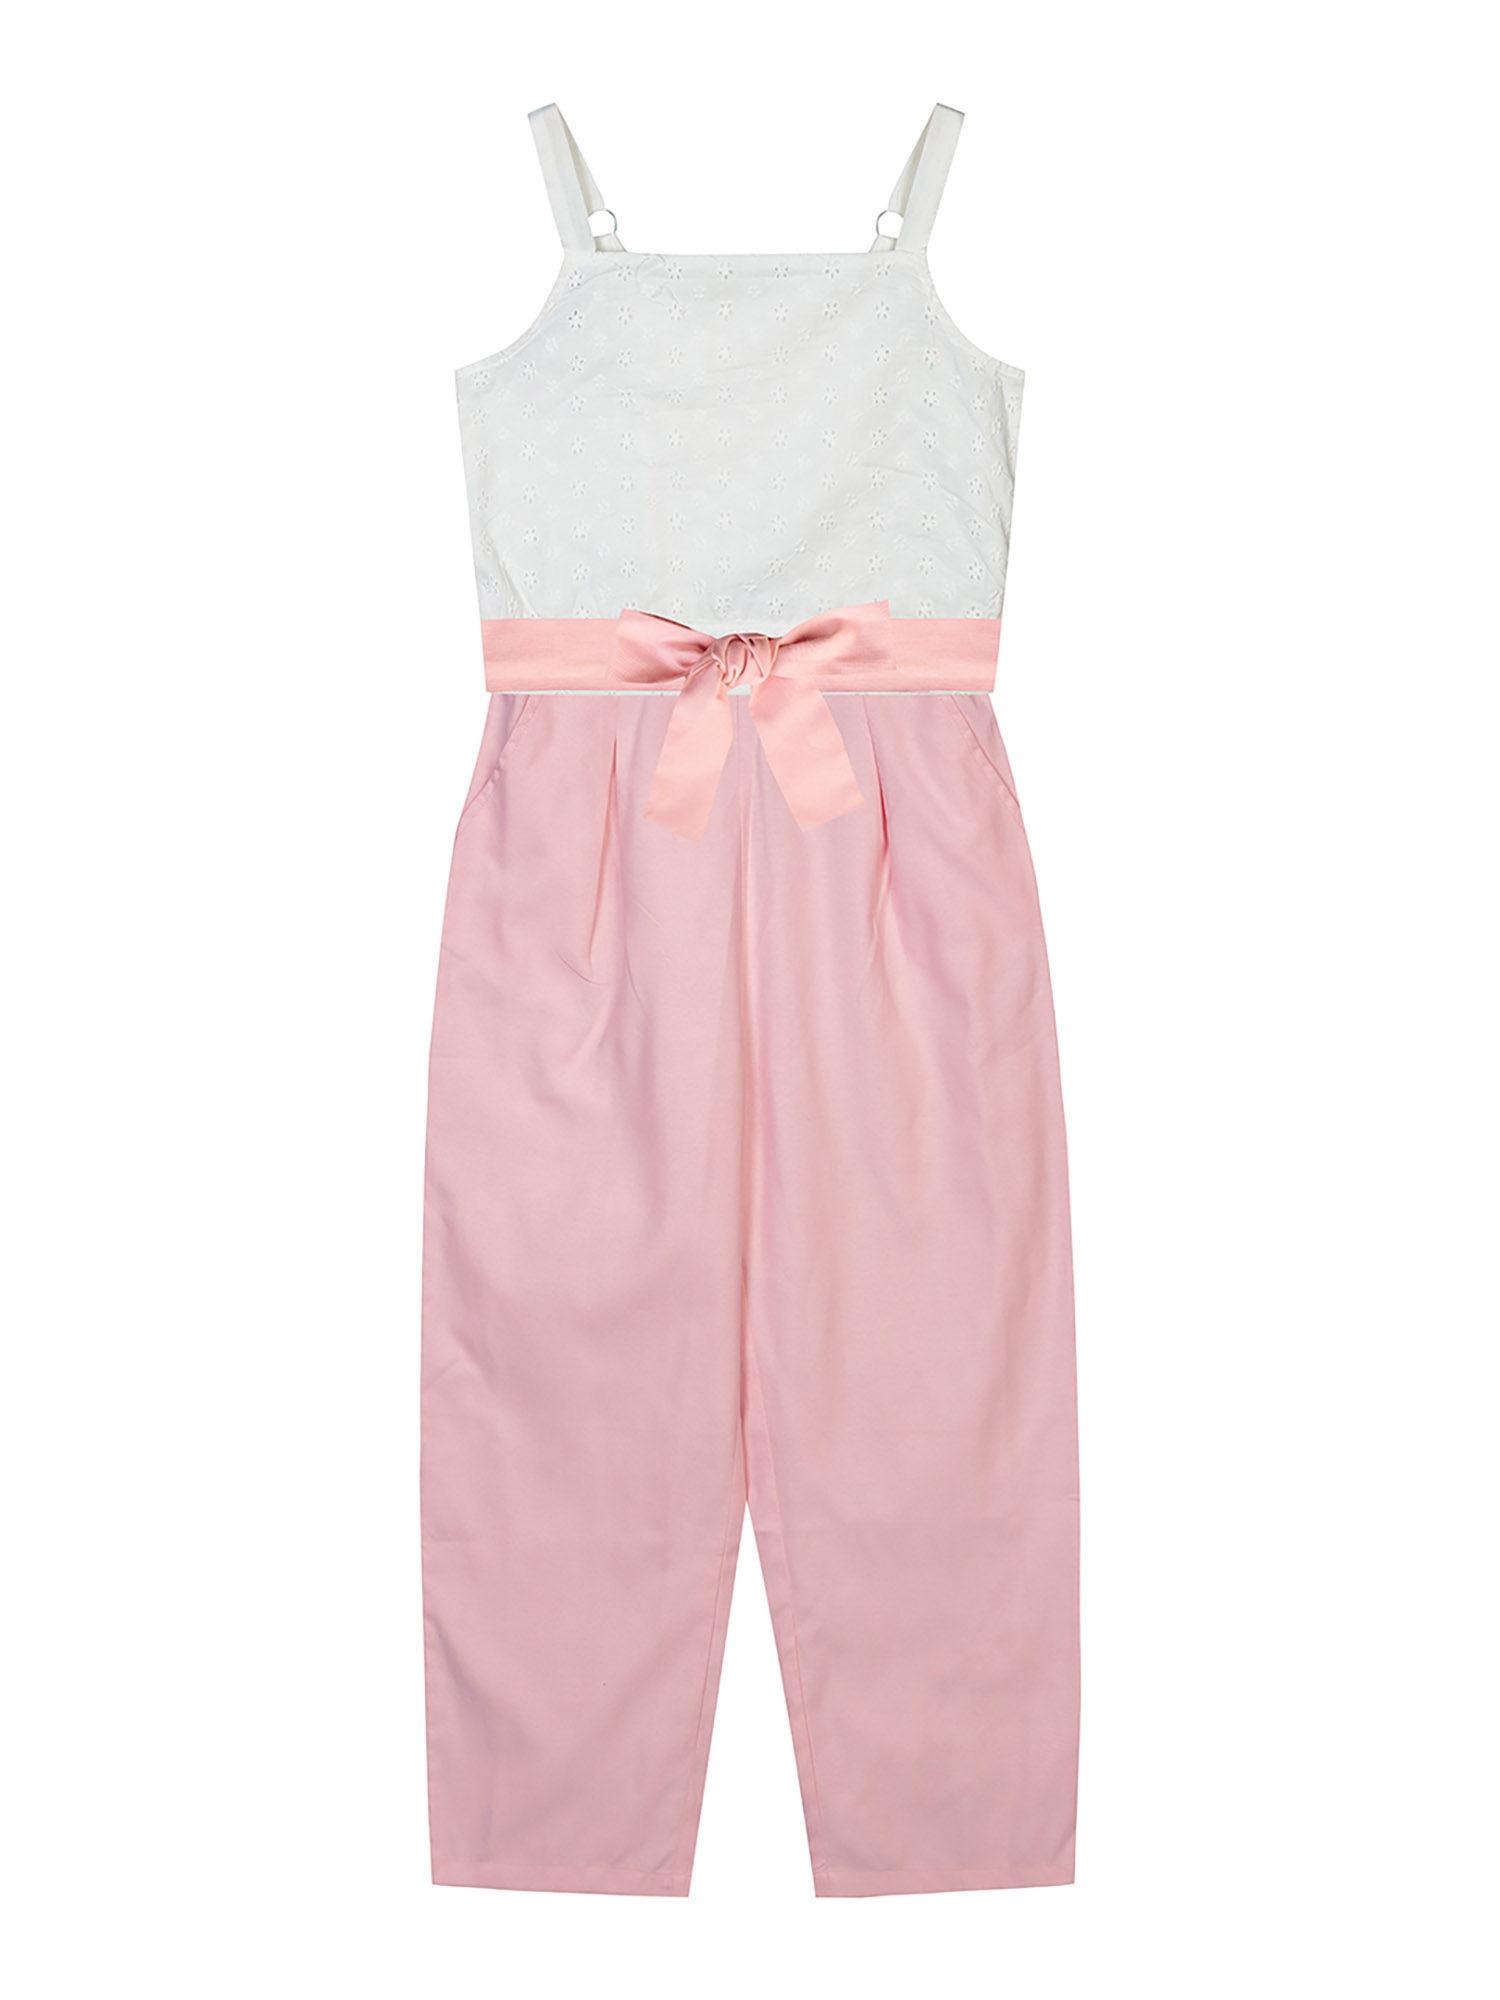 girls white & pink top-pant (set of 2)